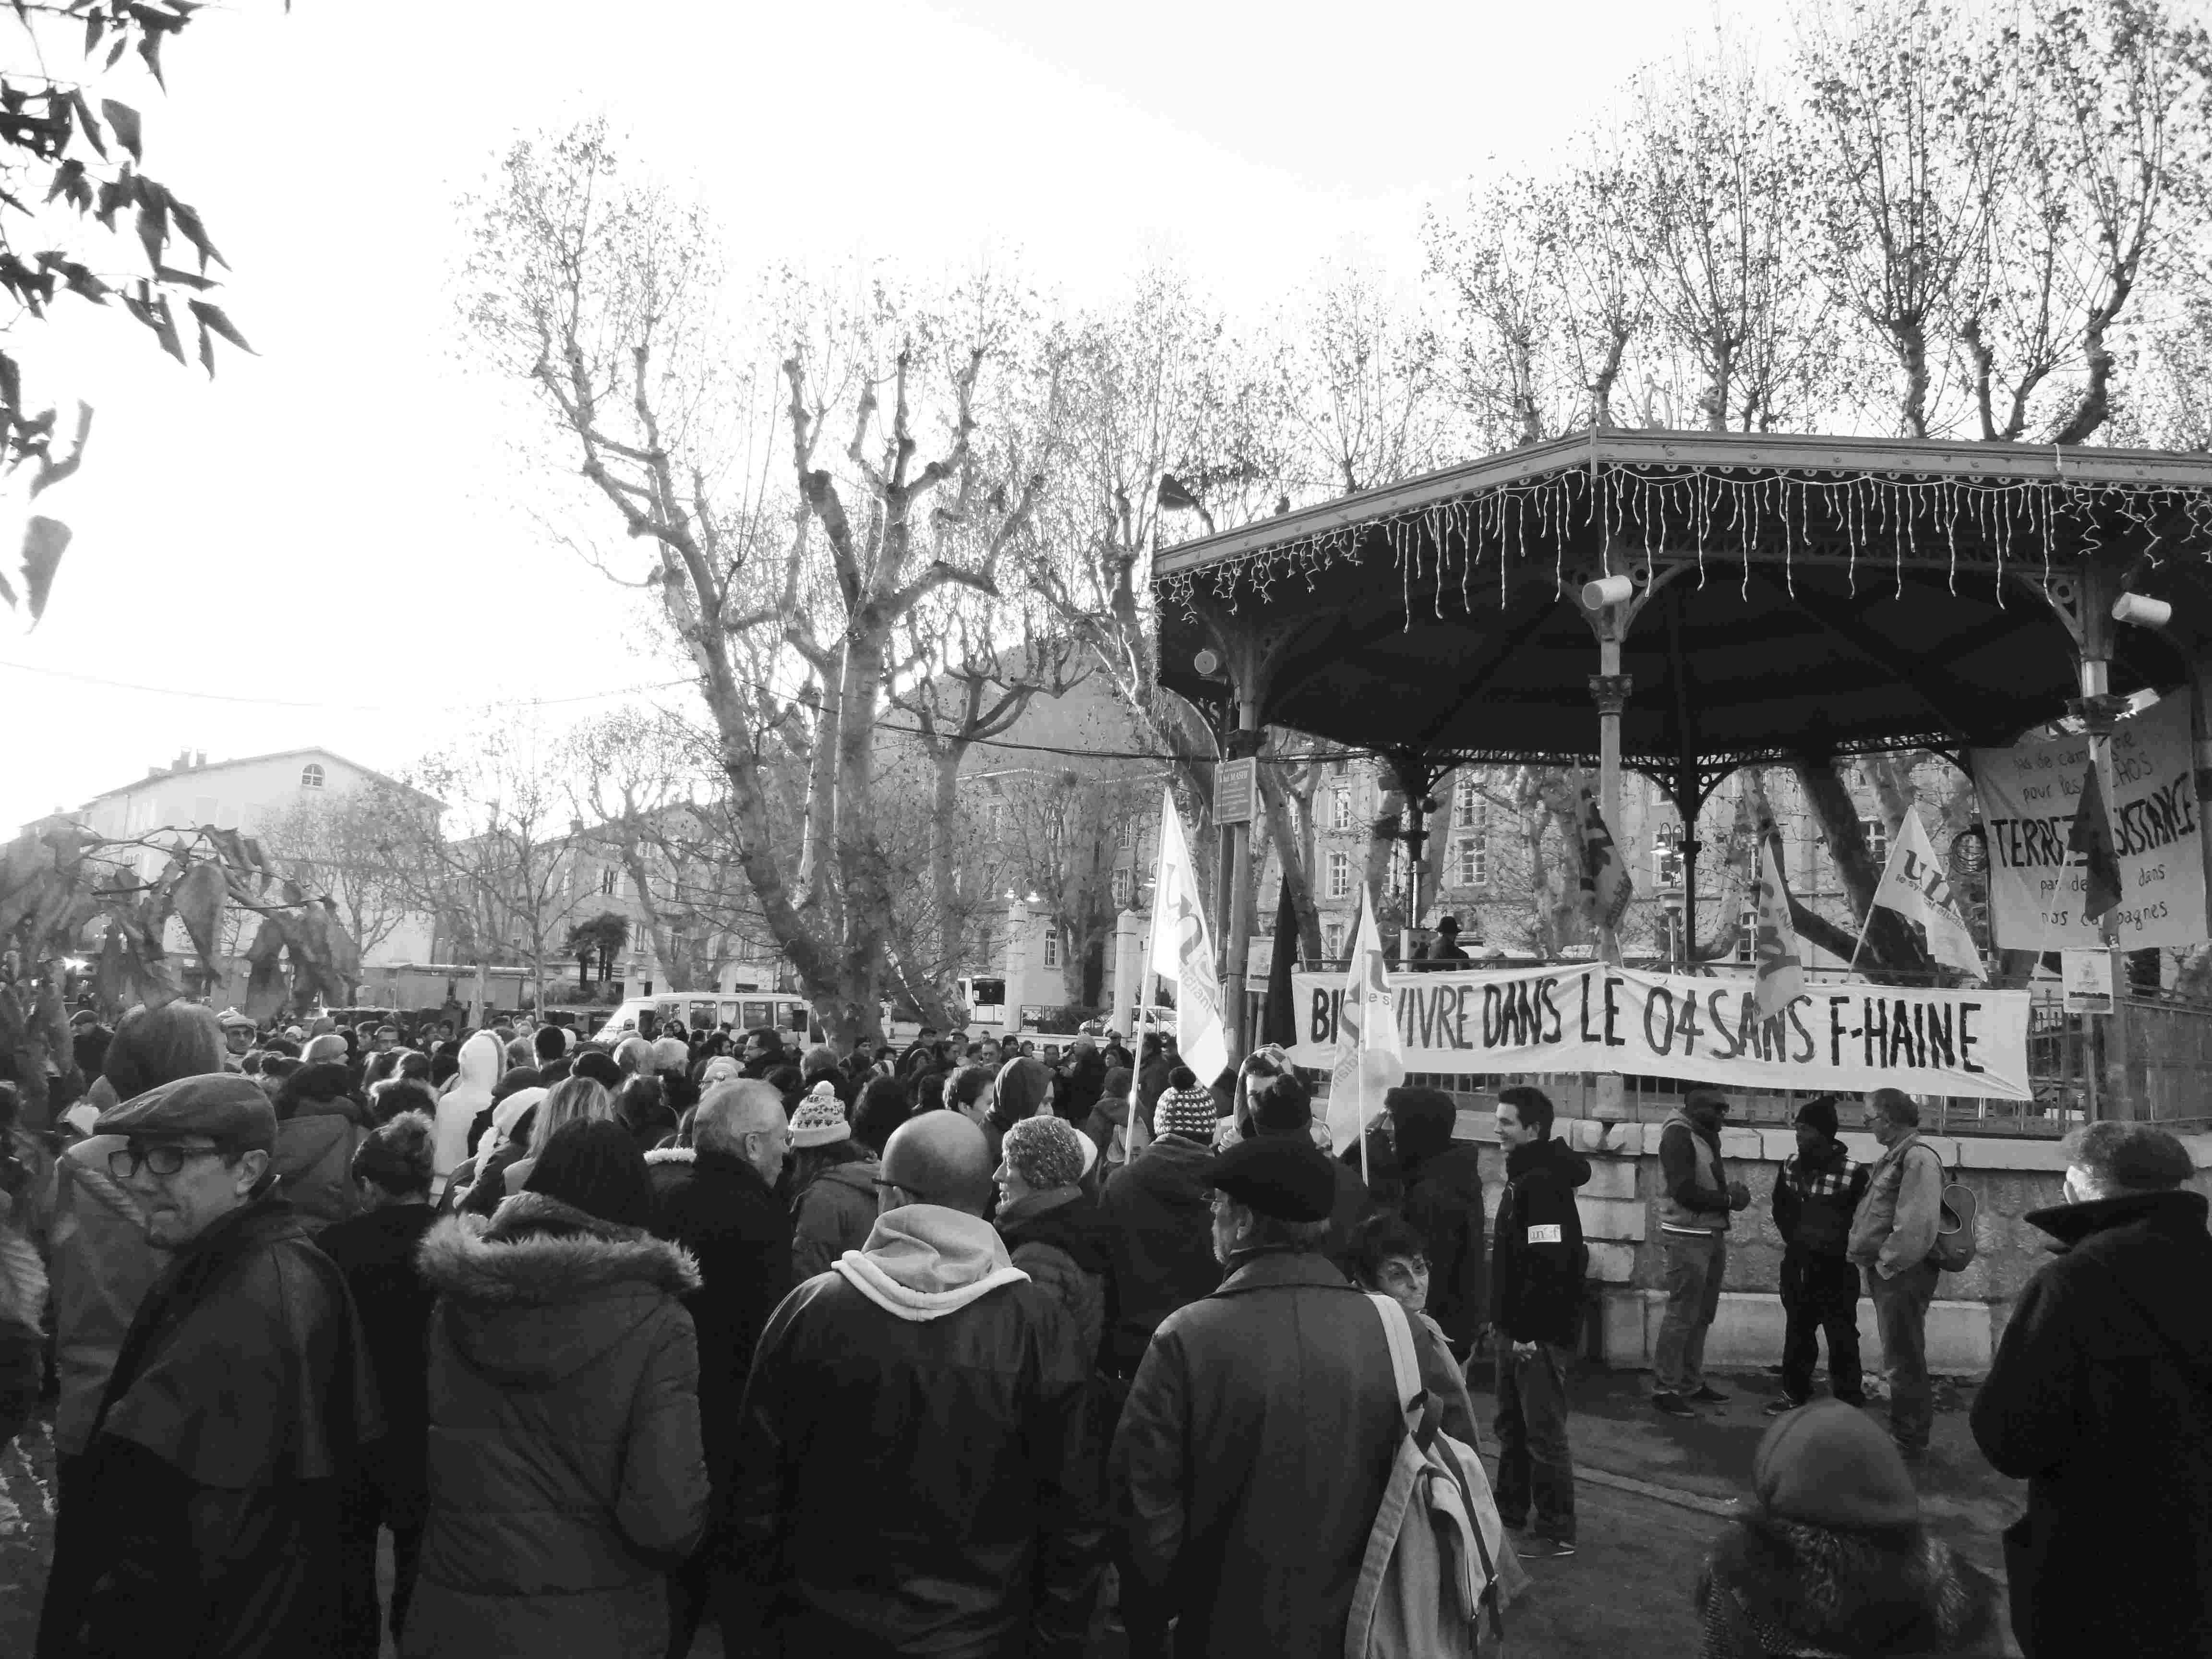 Kundgebung gegen einen Besuch von Marine Le Pen in Digne-les-Bains im November 2013